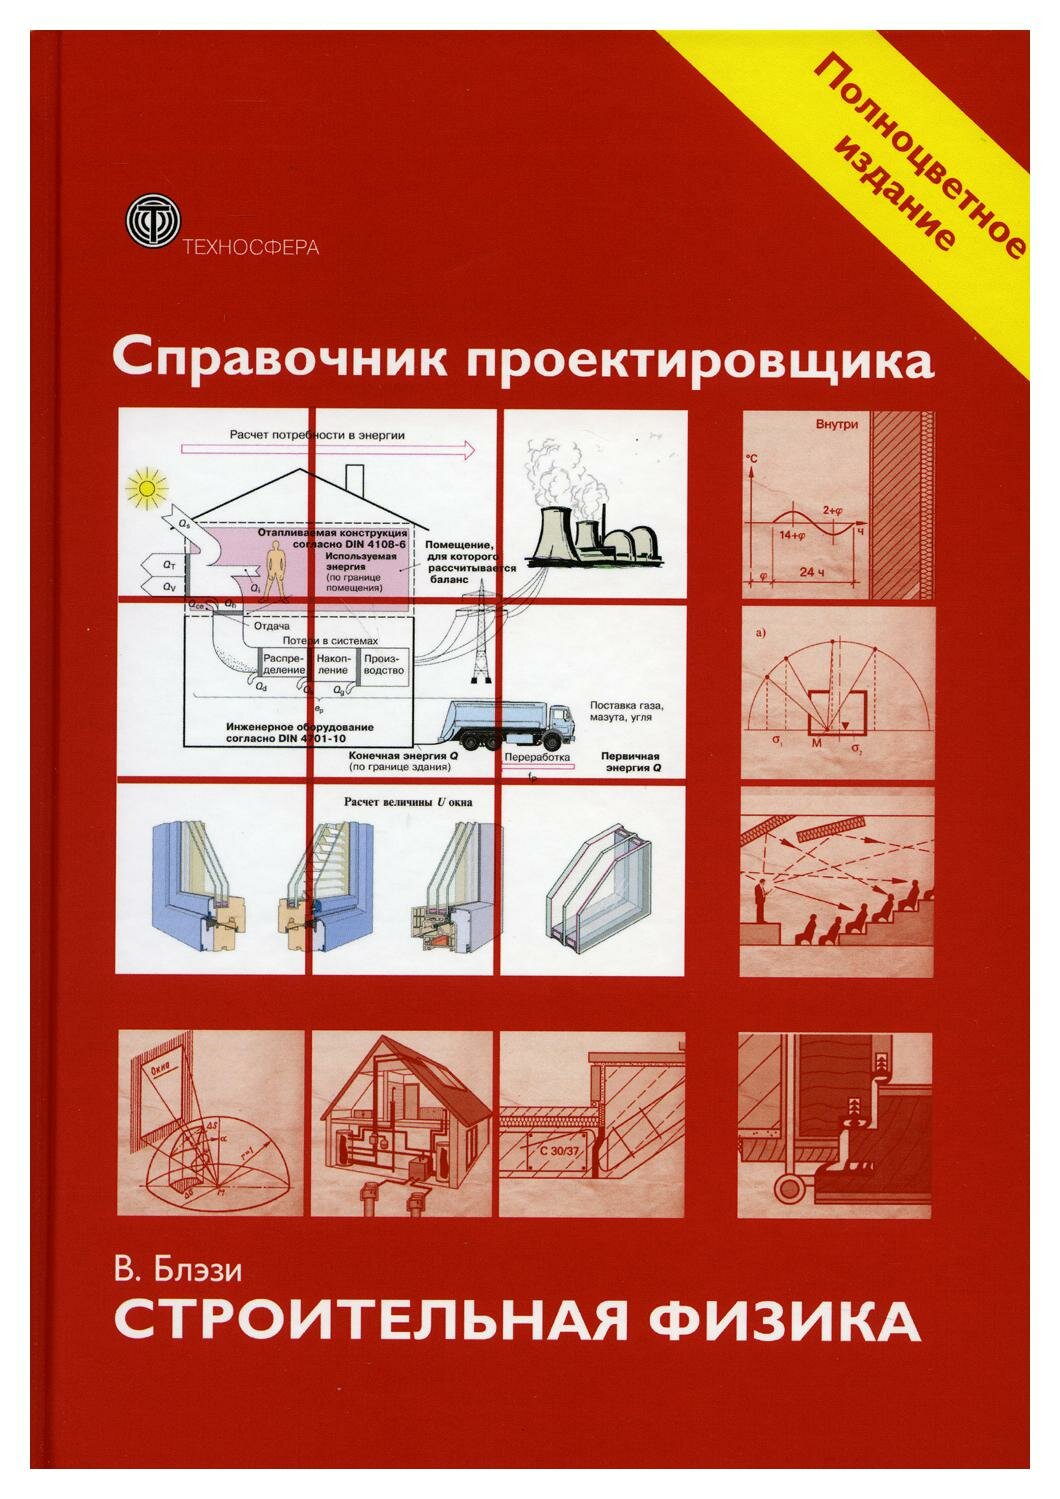 Справочник проектировщика. Строительная физика - фото №3